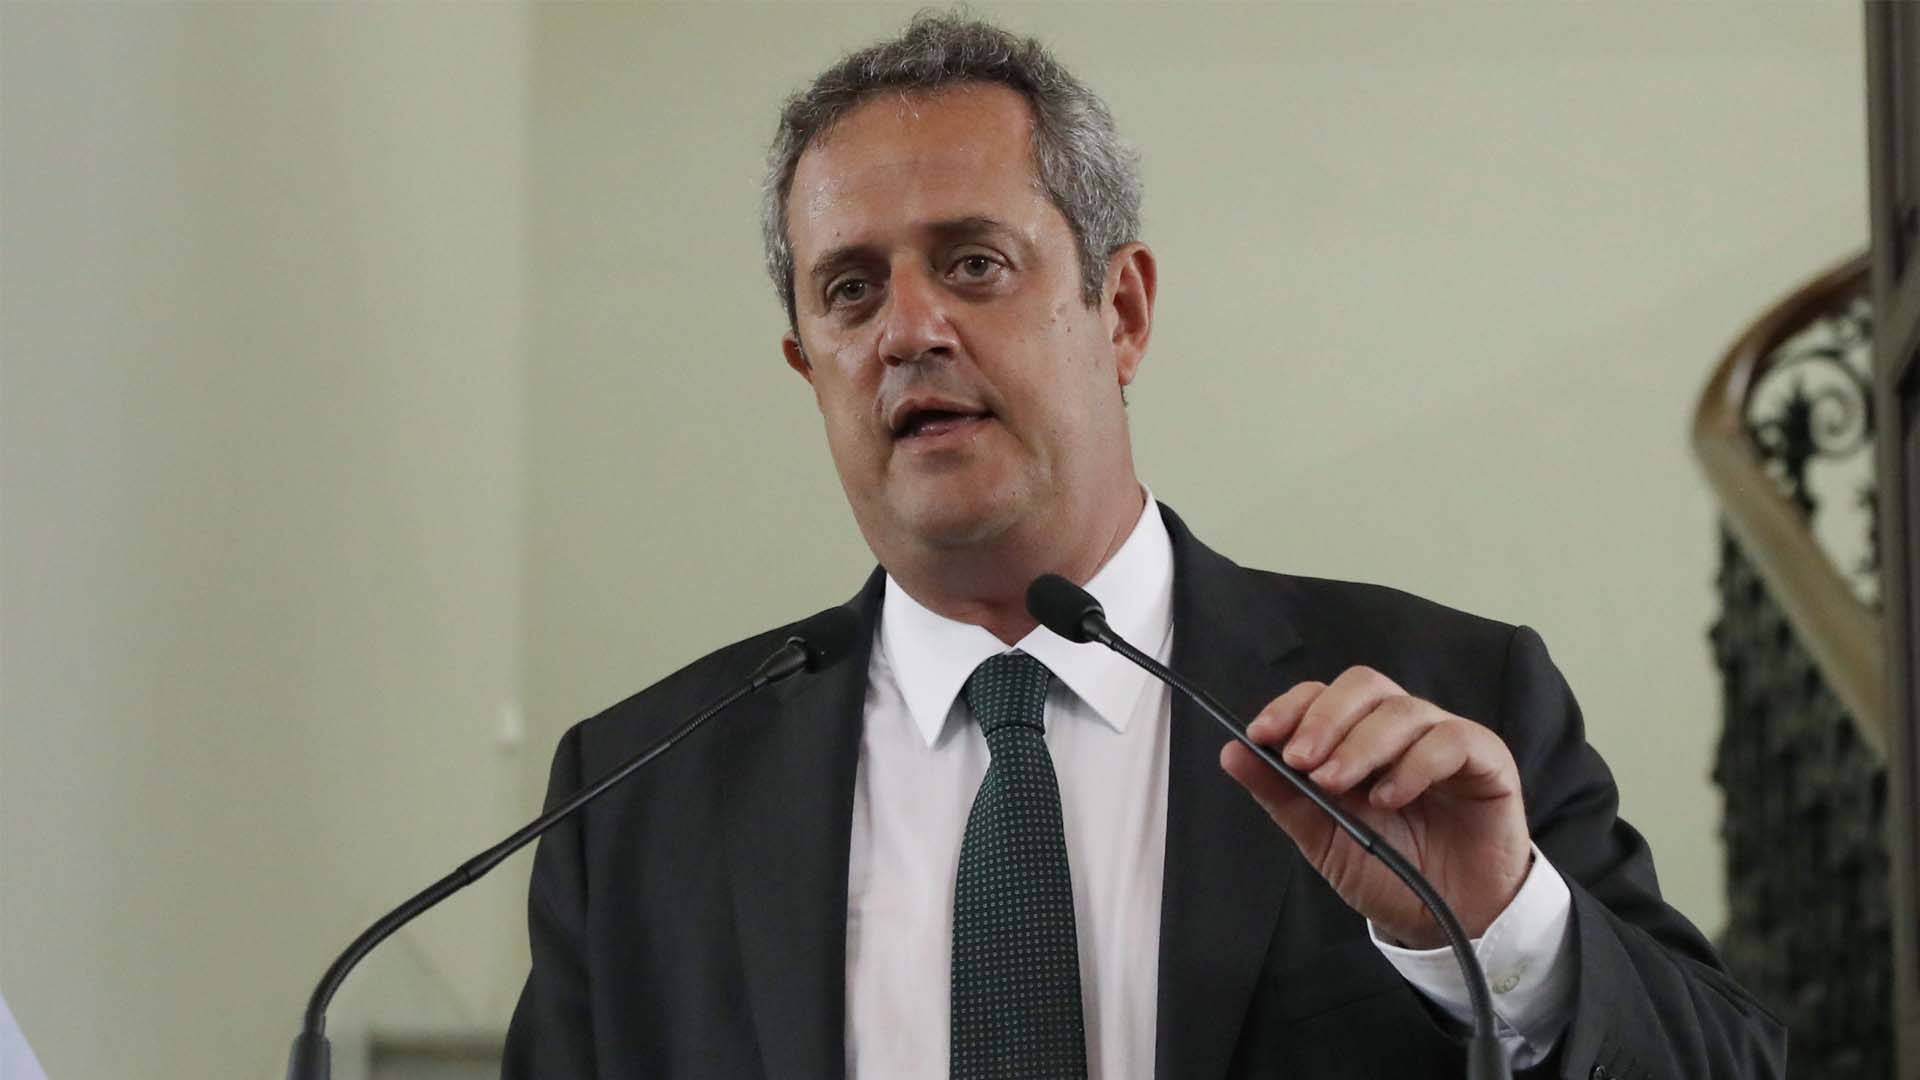 El exconseller preso Joaquim Forn liderará una candidatura "para ganar" en Barcelona